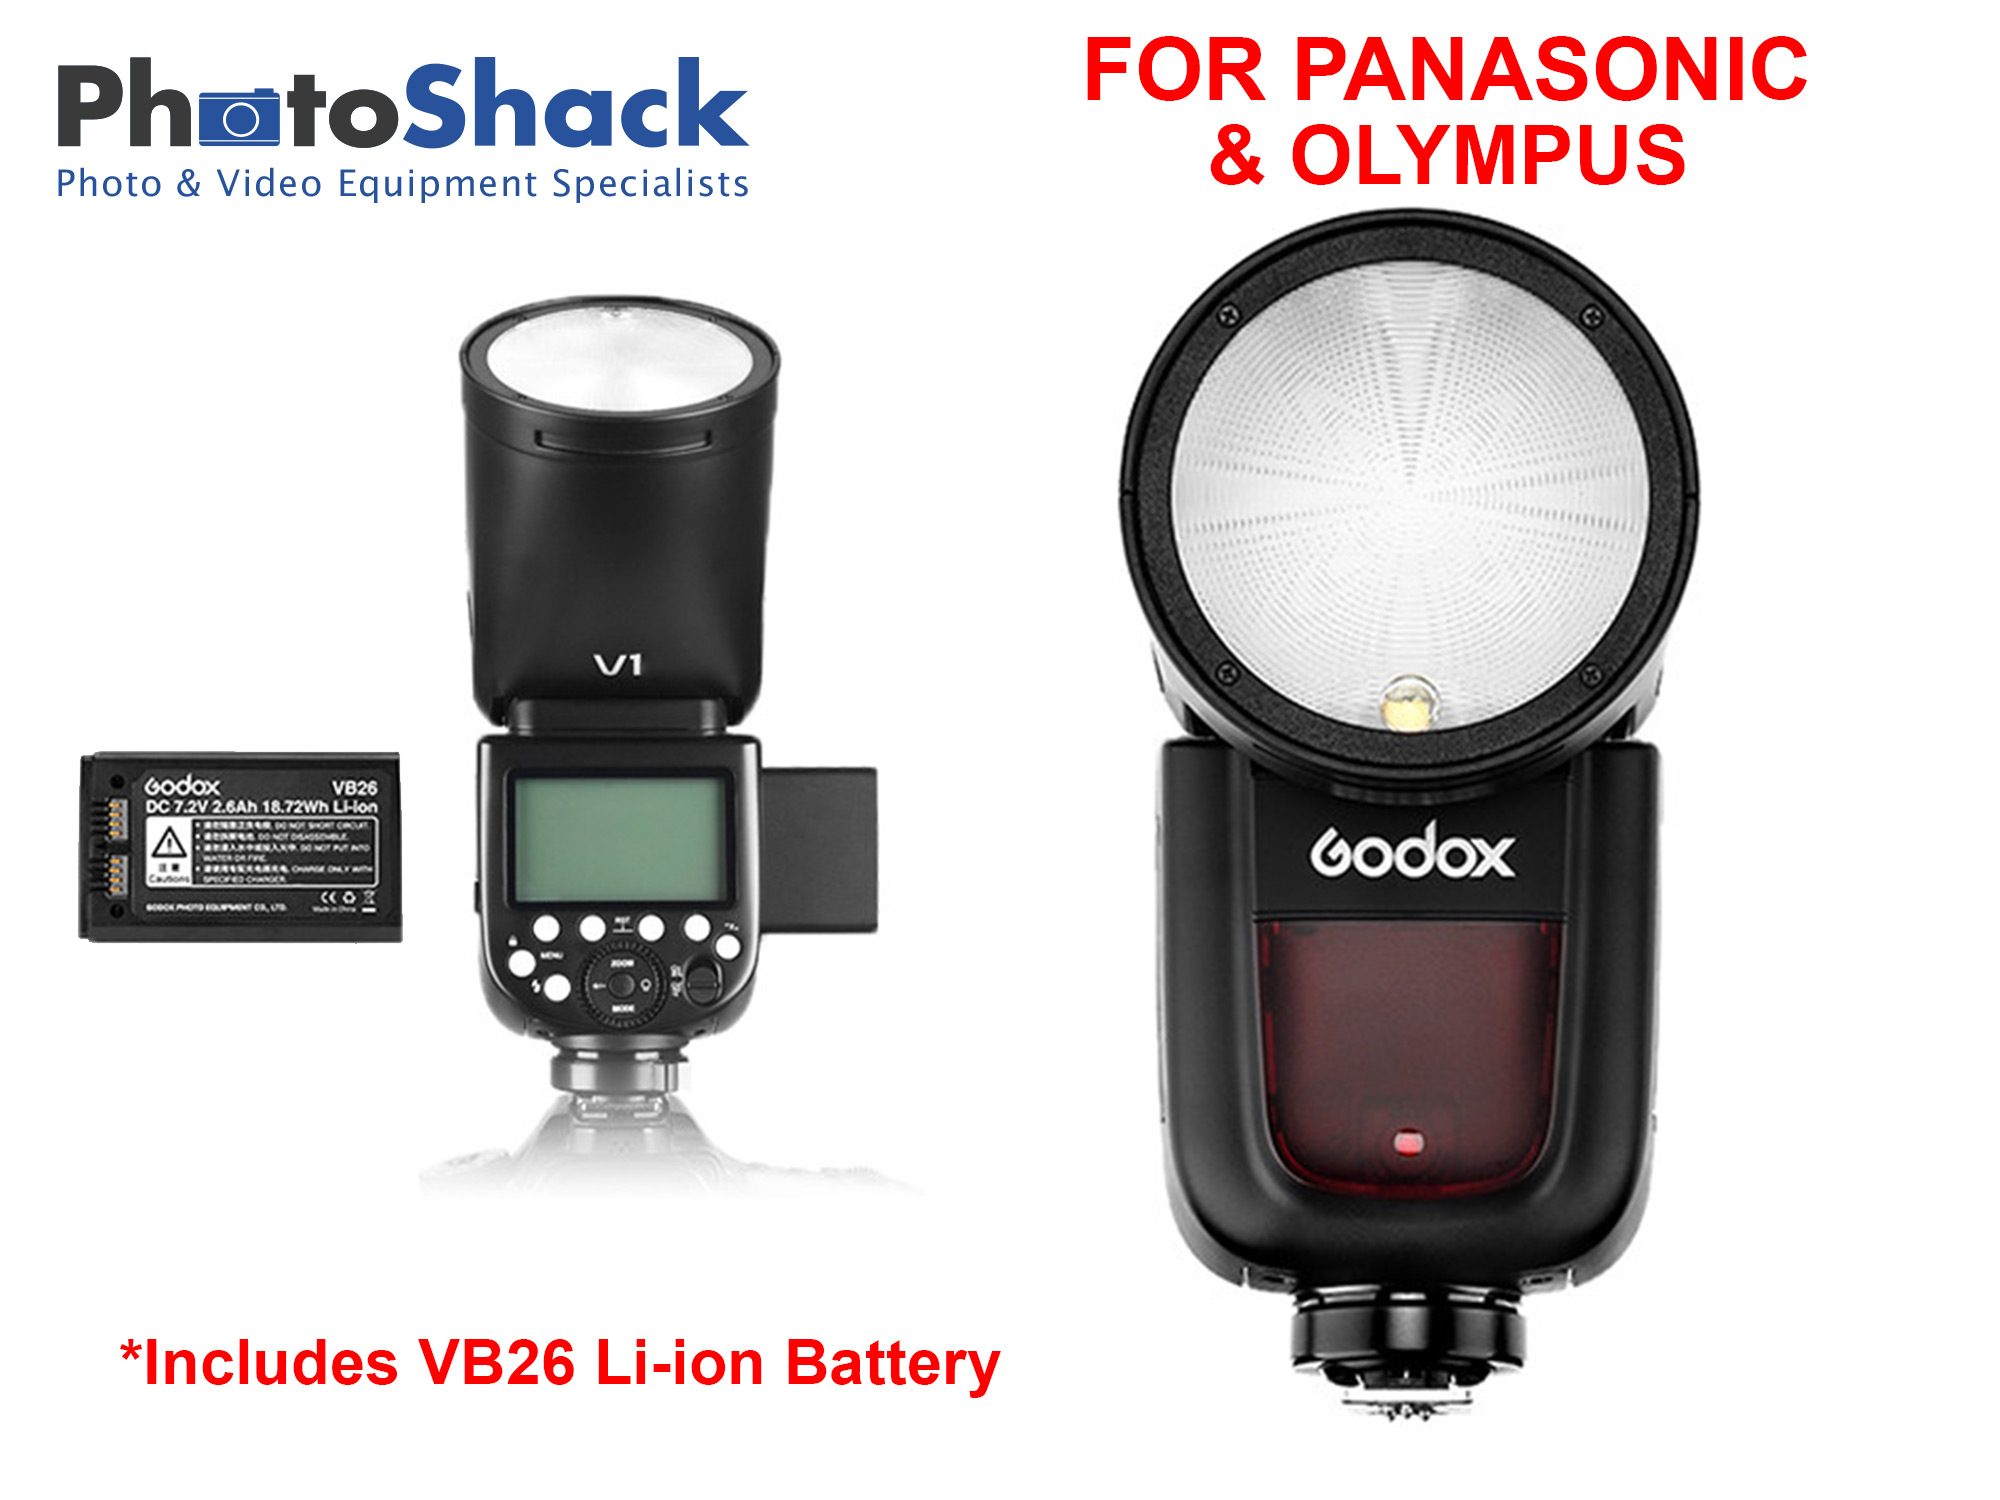 Godox V1 Flash for Panasonic/Olympus